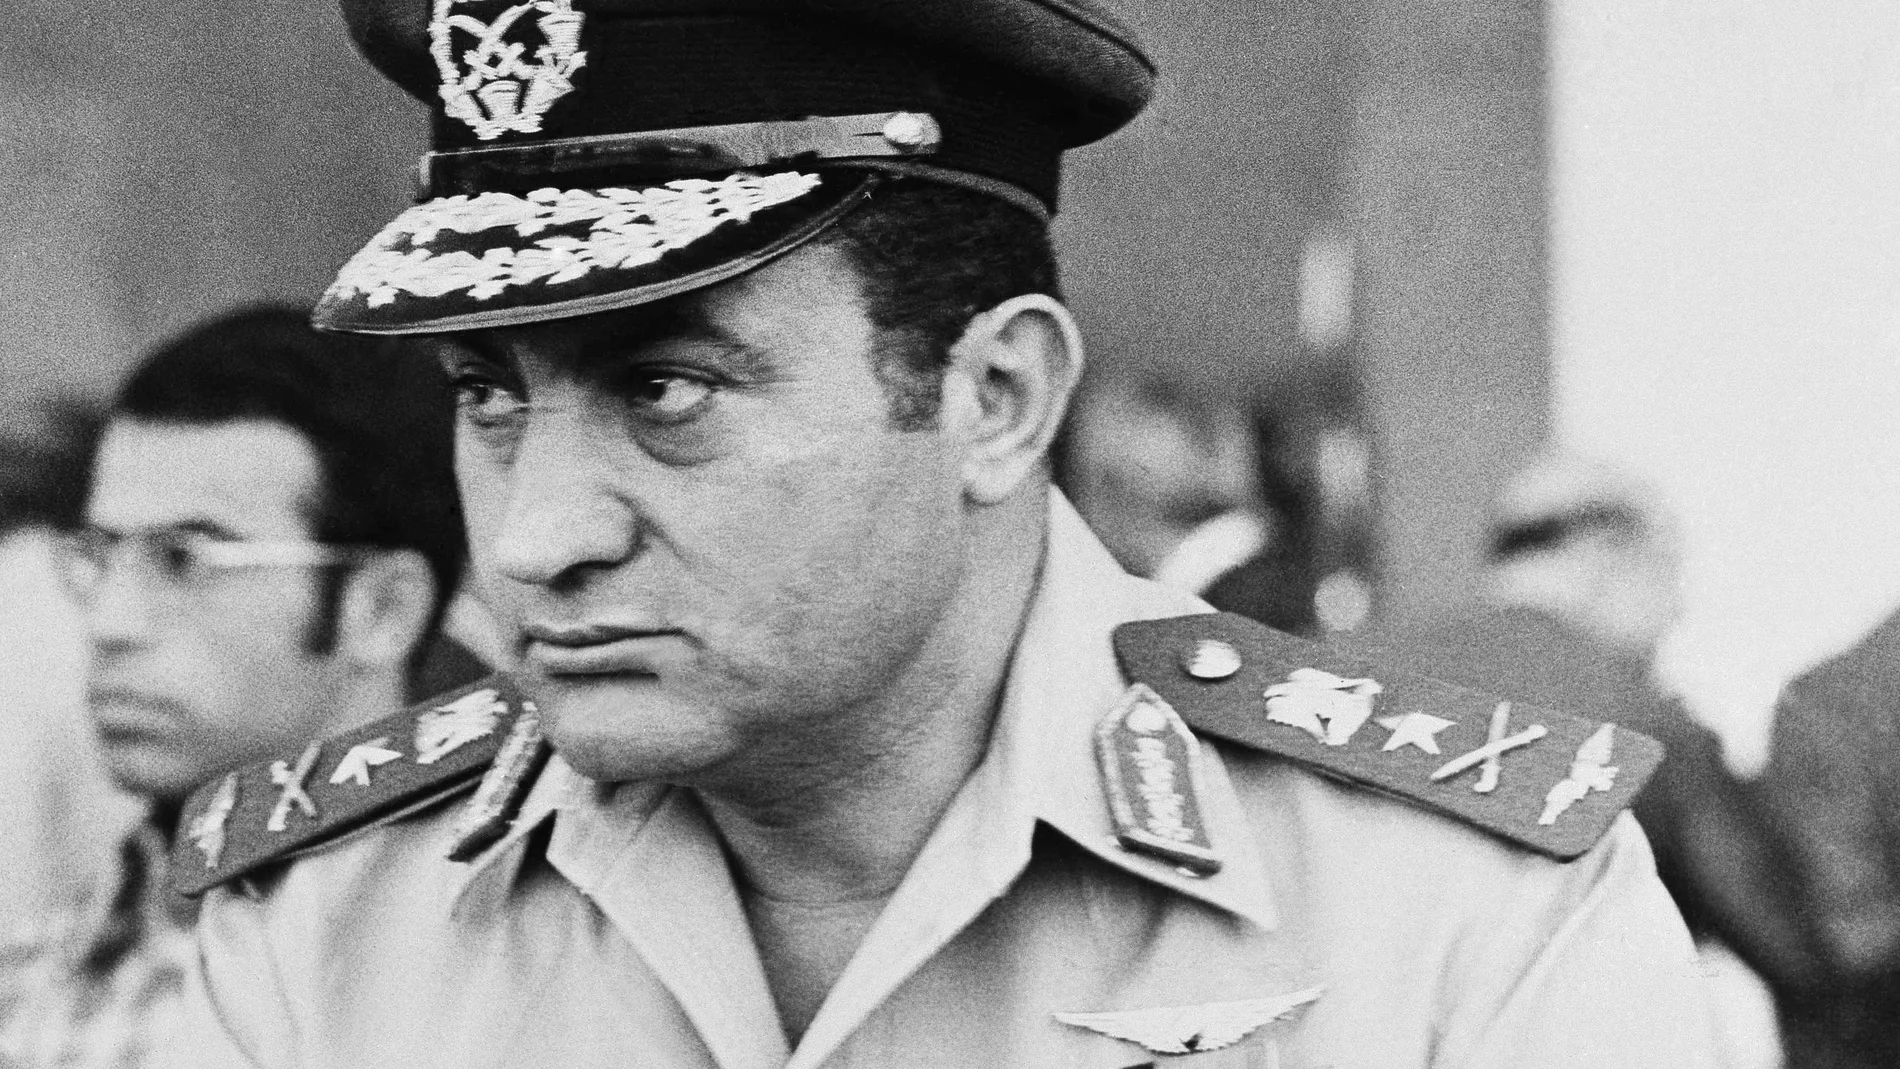 Imagen de 1974 del entonces comandante de la Fuerza Aérea egipcia Hosni Mubarak, en una parada militar en El Cairo.